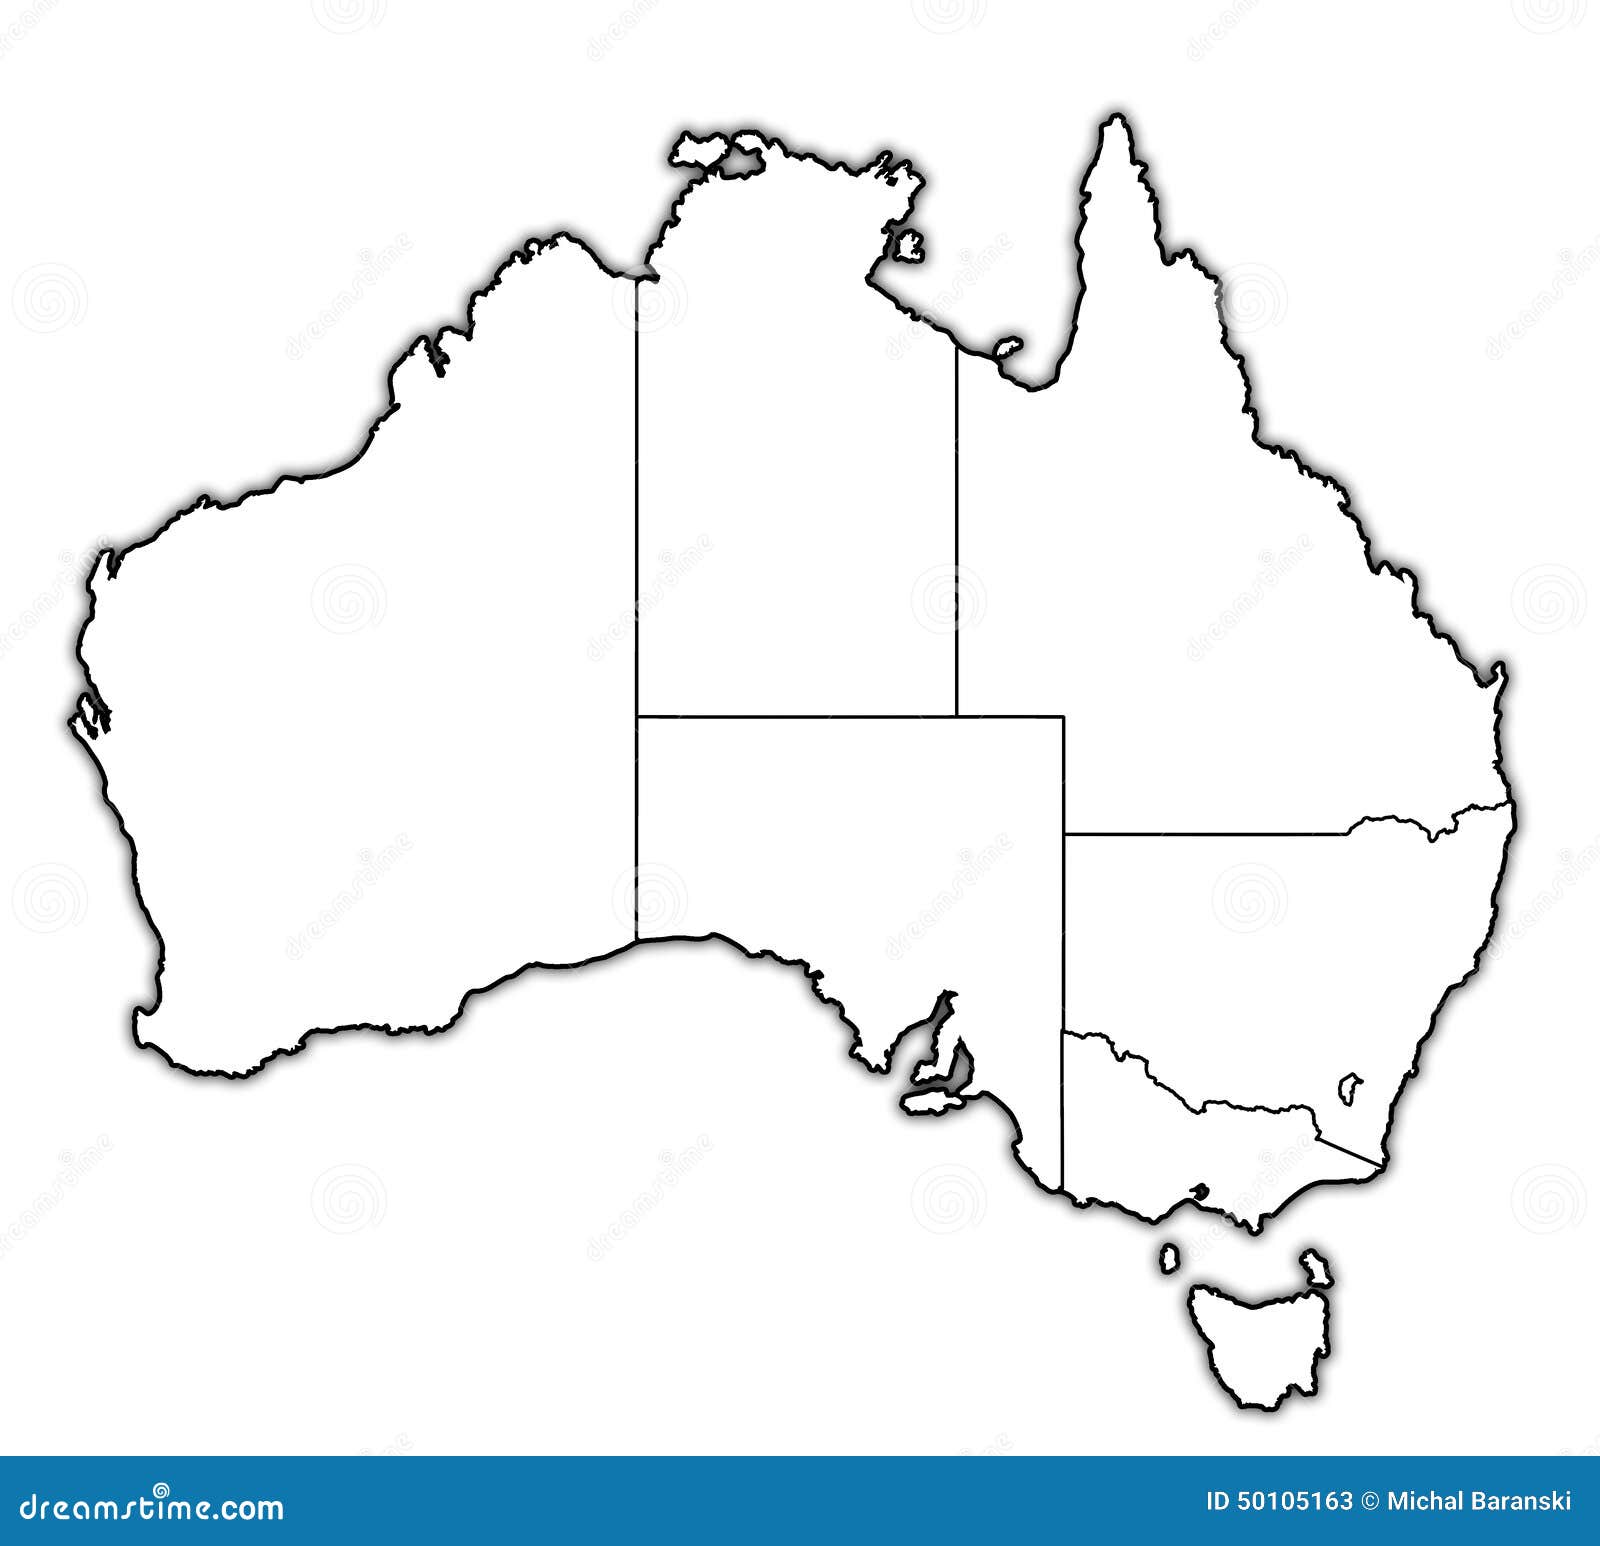 Контурные карты австралия 10 класс. Контурная карта Австралии со Штатами. Пустая контурная карта Австралии. Контурная карта Австралии с границами государств. Карта Австралии контурная карта.